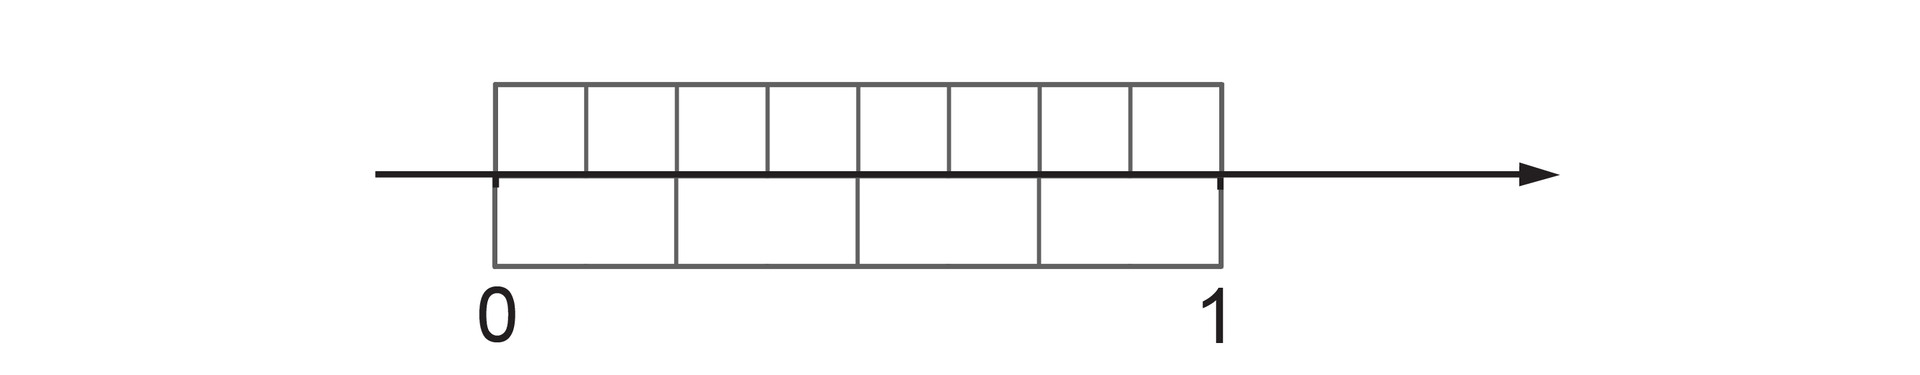 Rysunek osi liczbowej z zaznaczonymi punktami 0 i 1. Pomiędzy punktami 0 i 1 nad osią zaznaczony prostokąt podzielony na 8 równych części. Pod osią zaznaczony prostokąt podzielony na 4 równe części.